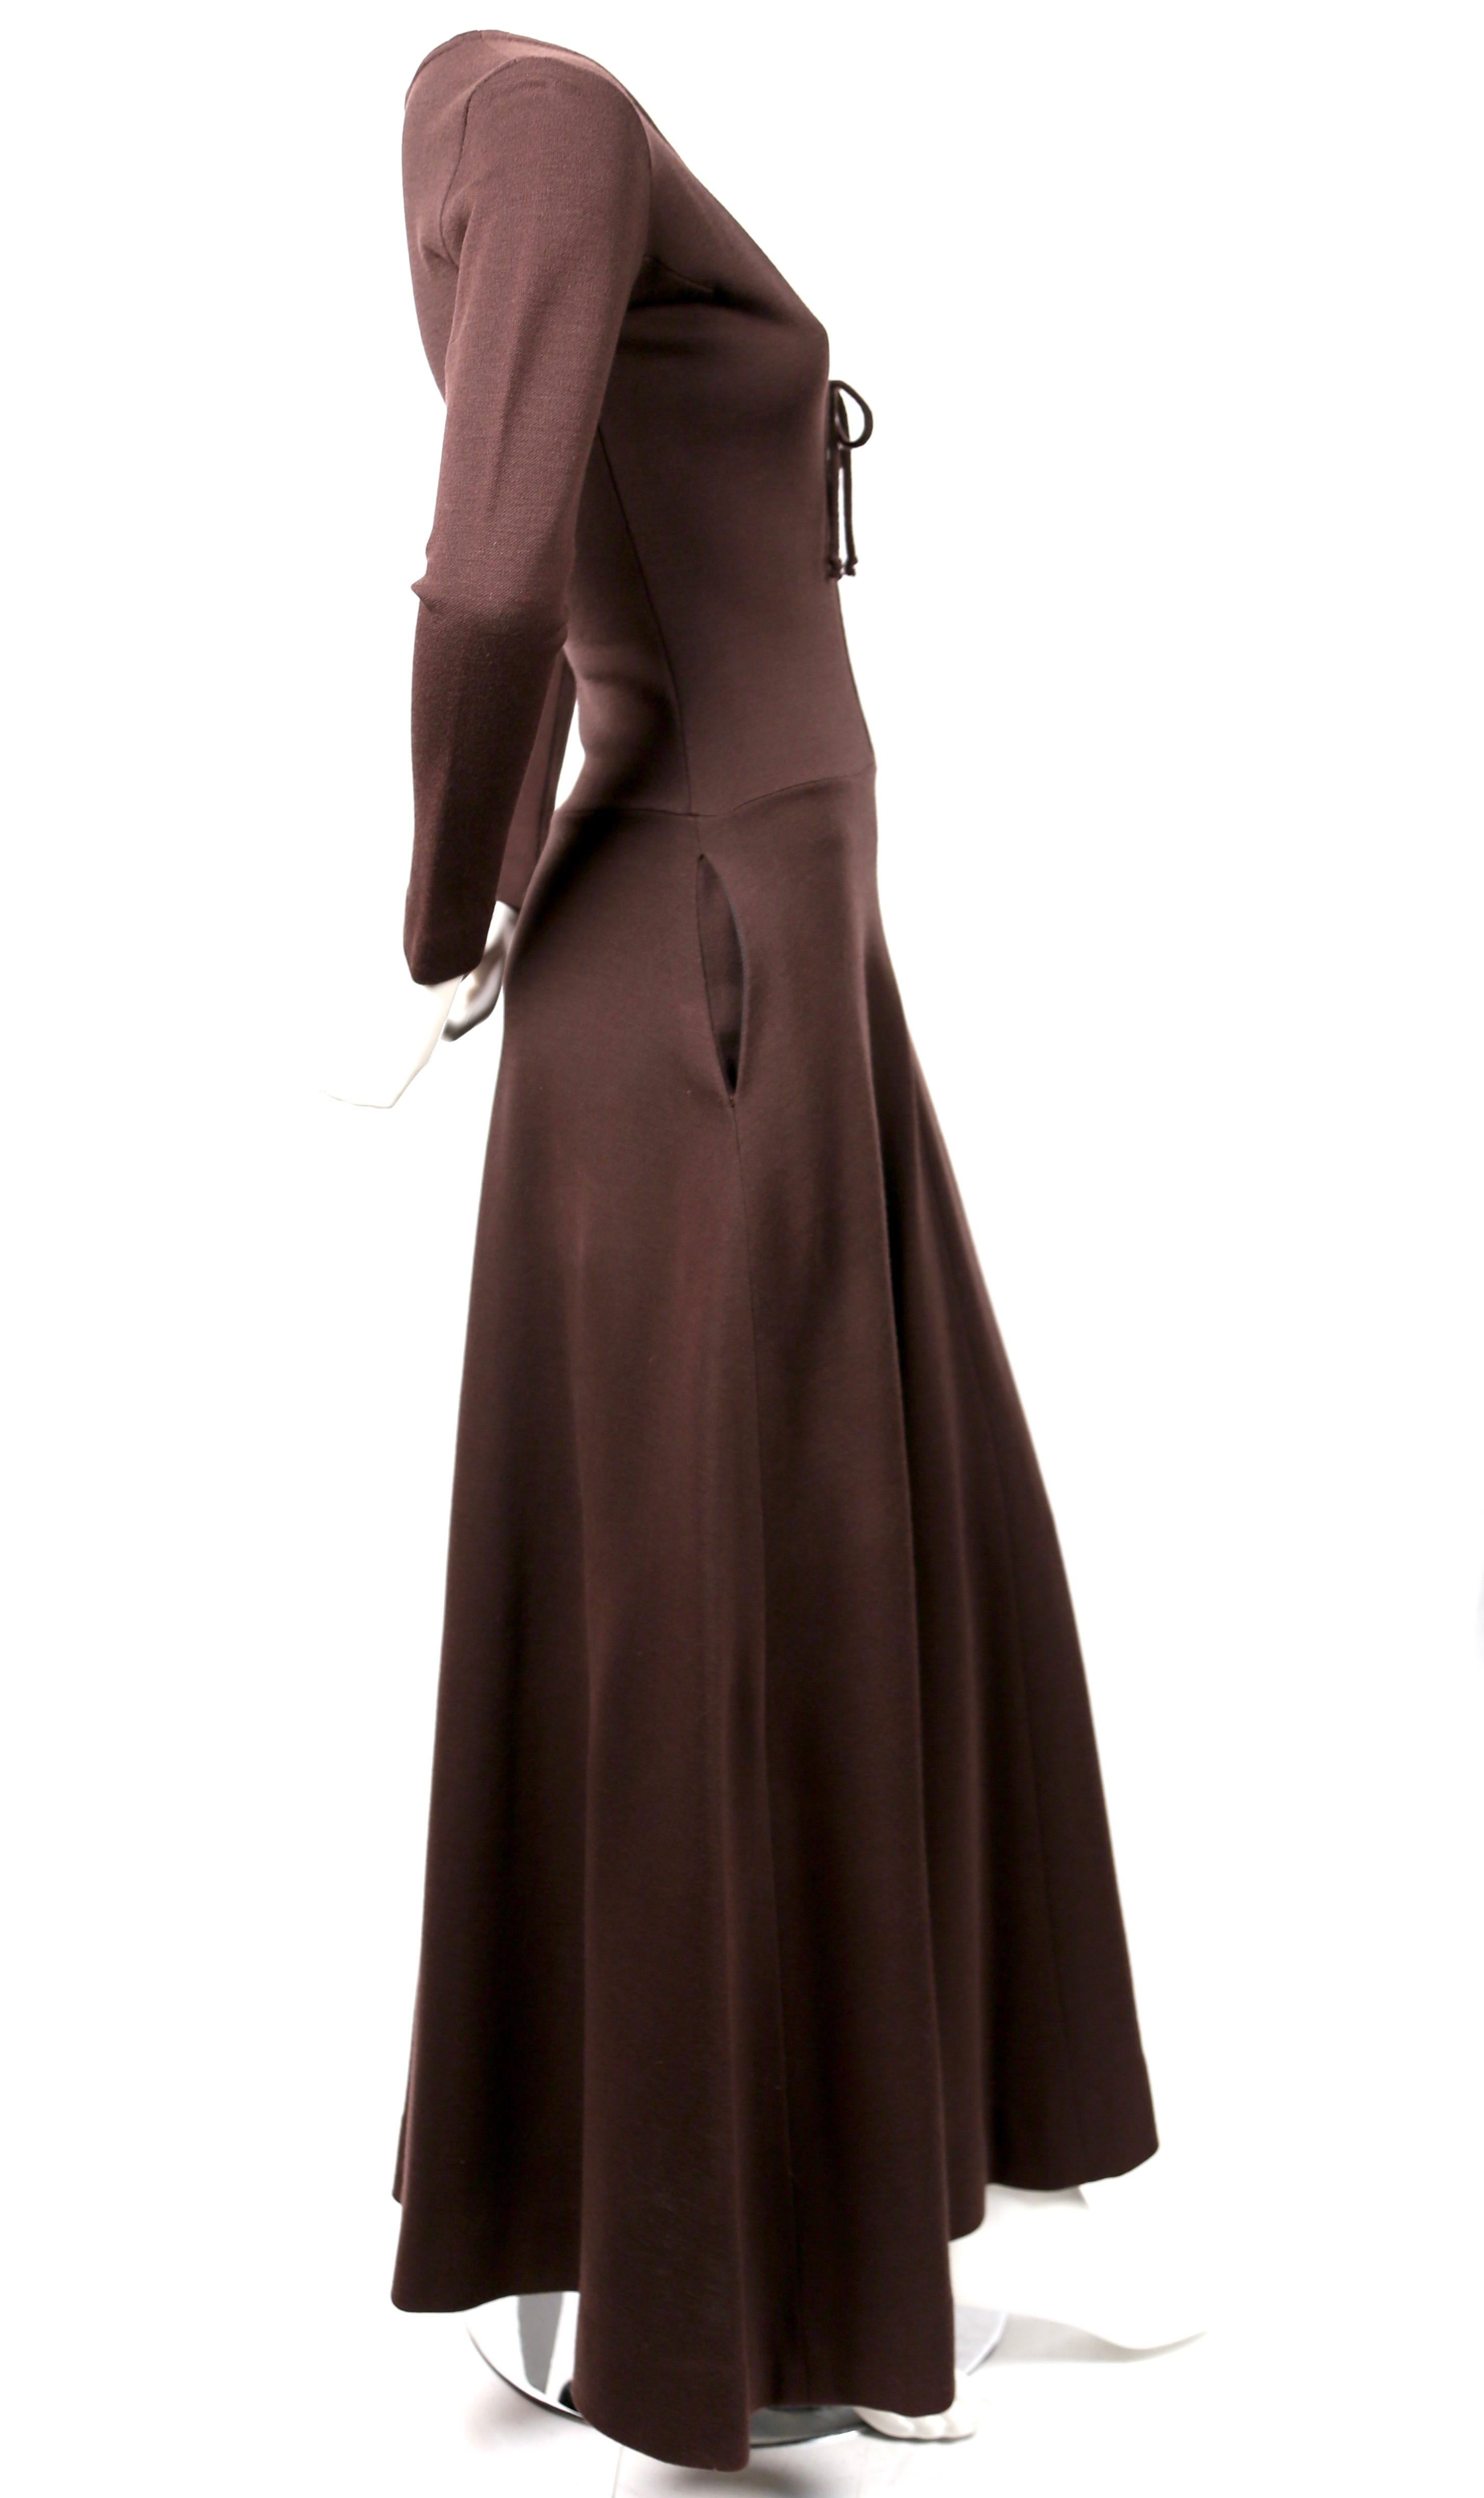 Tiefbraunes, knöchellanges Wollkleid mit tiefem V-Ausschnitt und langen Ärmeln, entworfen von Rudi Gernreich in den 1960er Jahren. Etikettiert eine Größe 8 aber dies am besten passt ein US 2 bis 4. Kleid war nicht auf Größe 2 Schaufensterpuppe